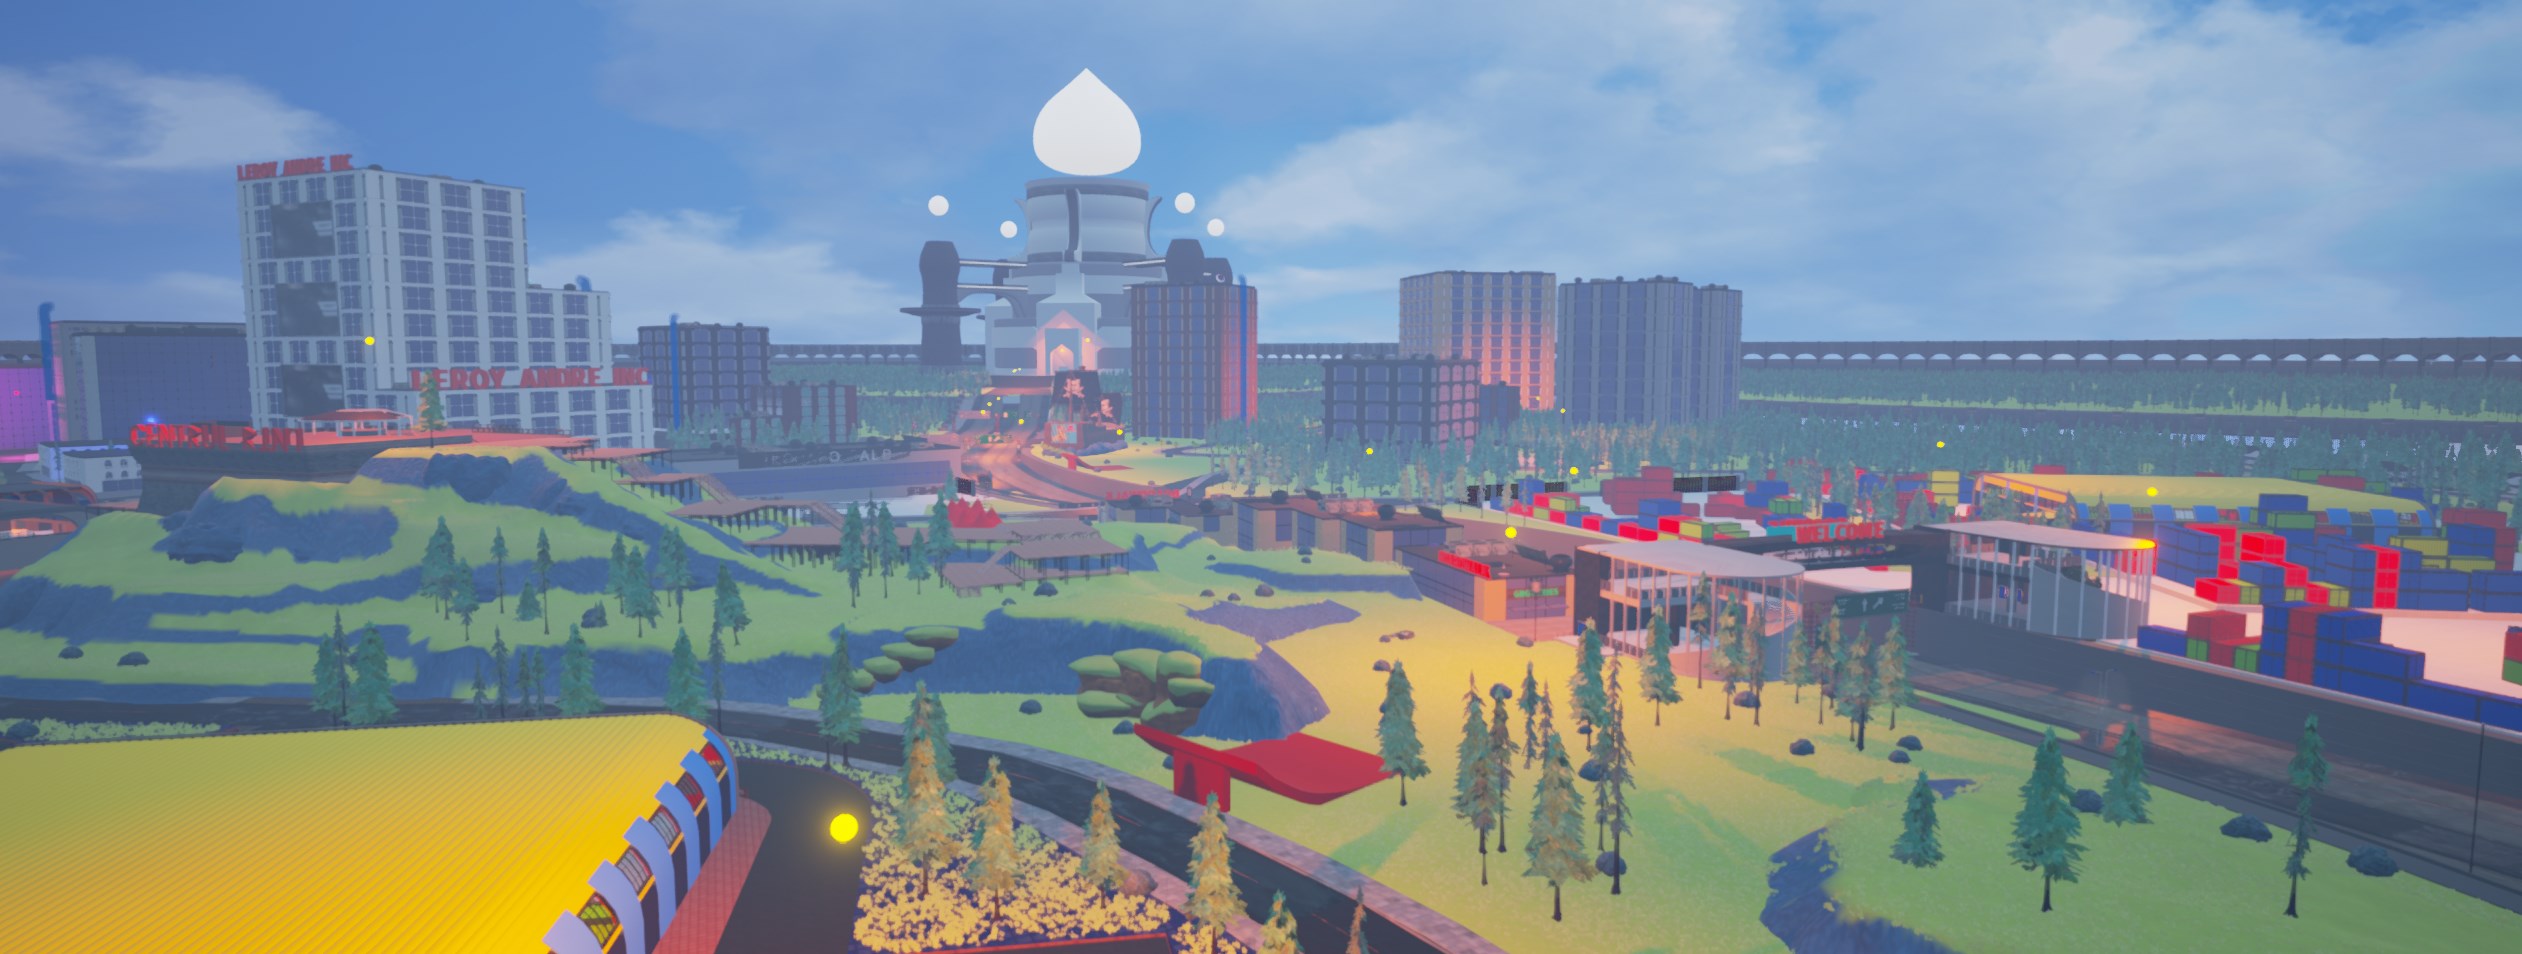 Cyberscape City Demo (2021)